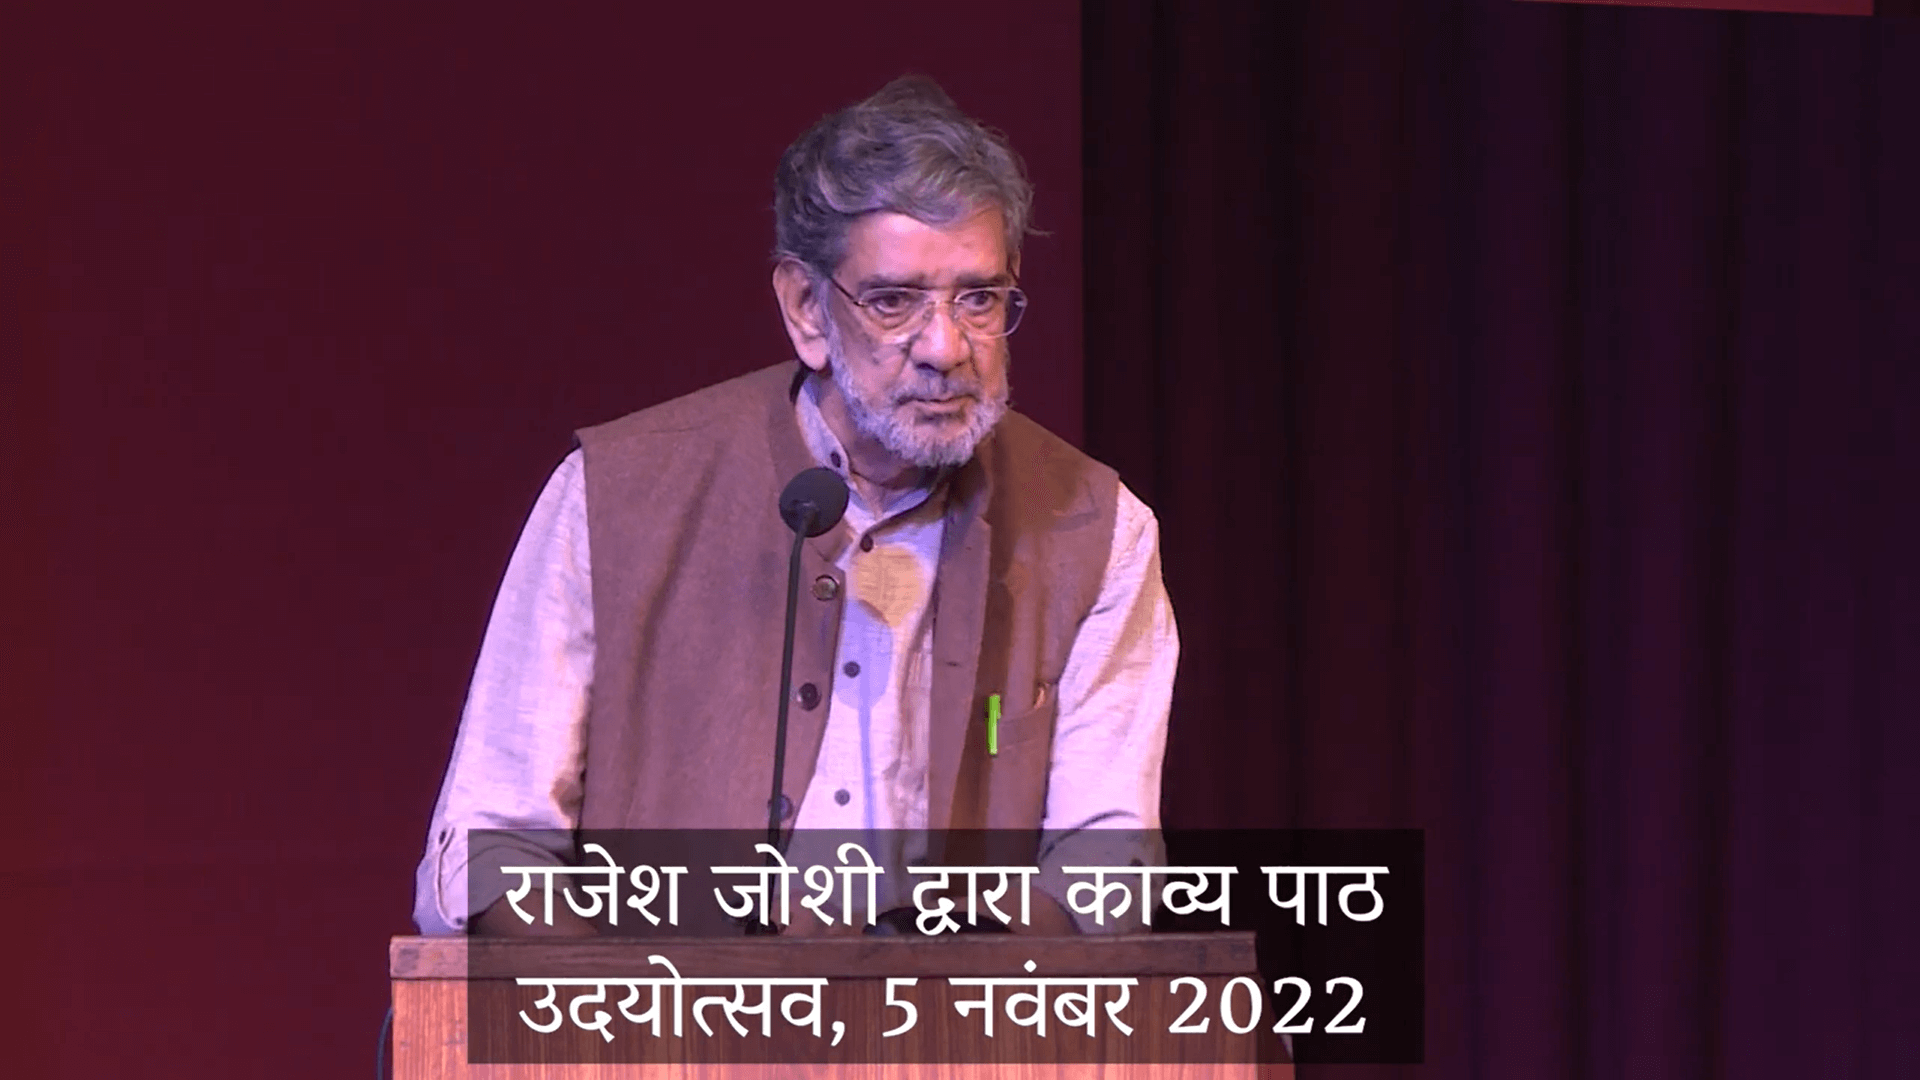  कविता | ‘मारे जाएँगे’ | राजेश जोशी | उदयोत्सव 2022